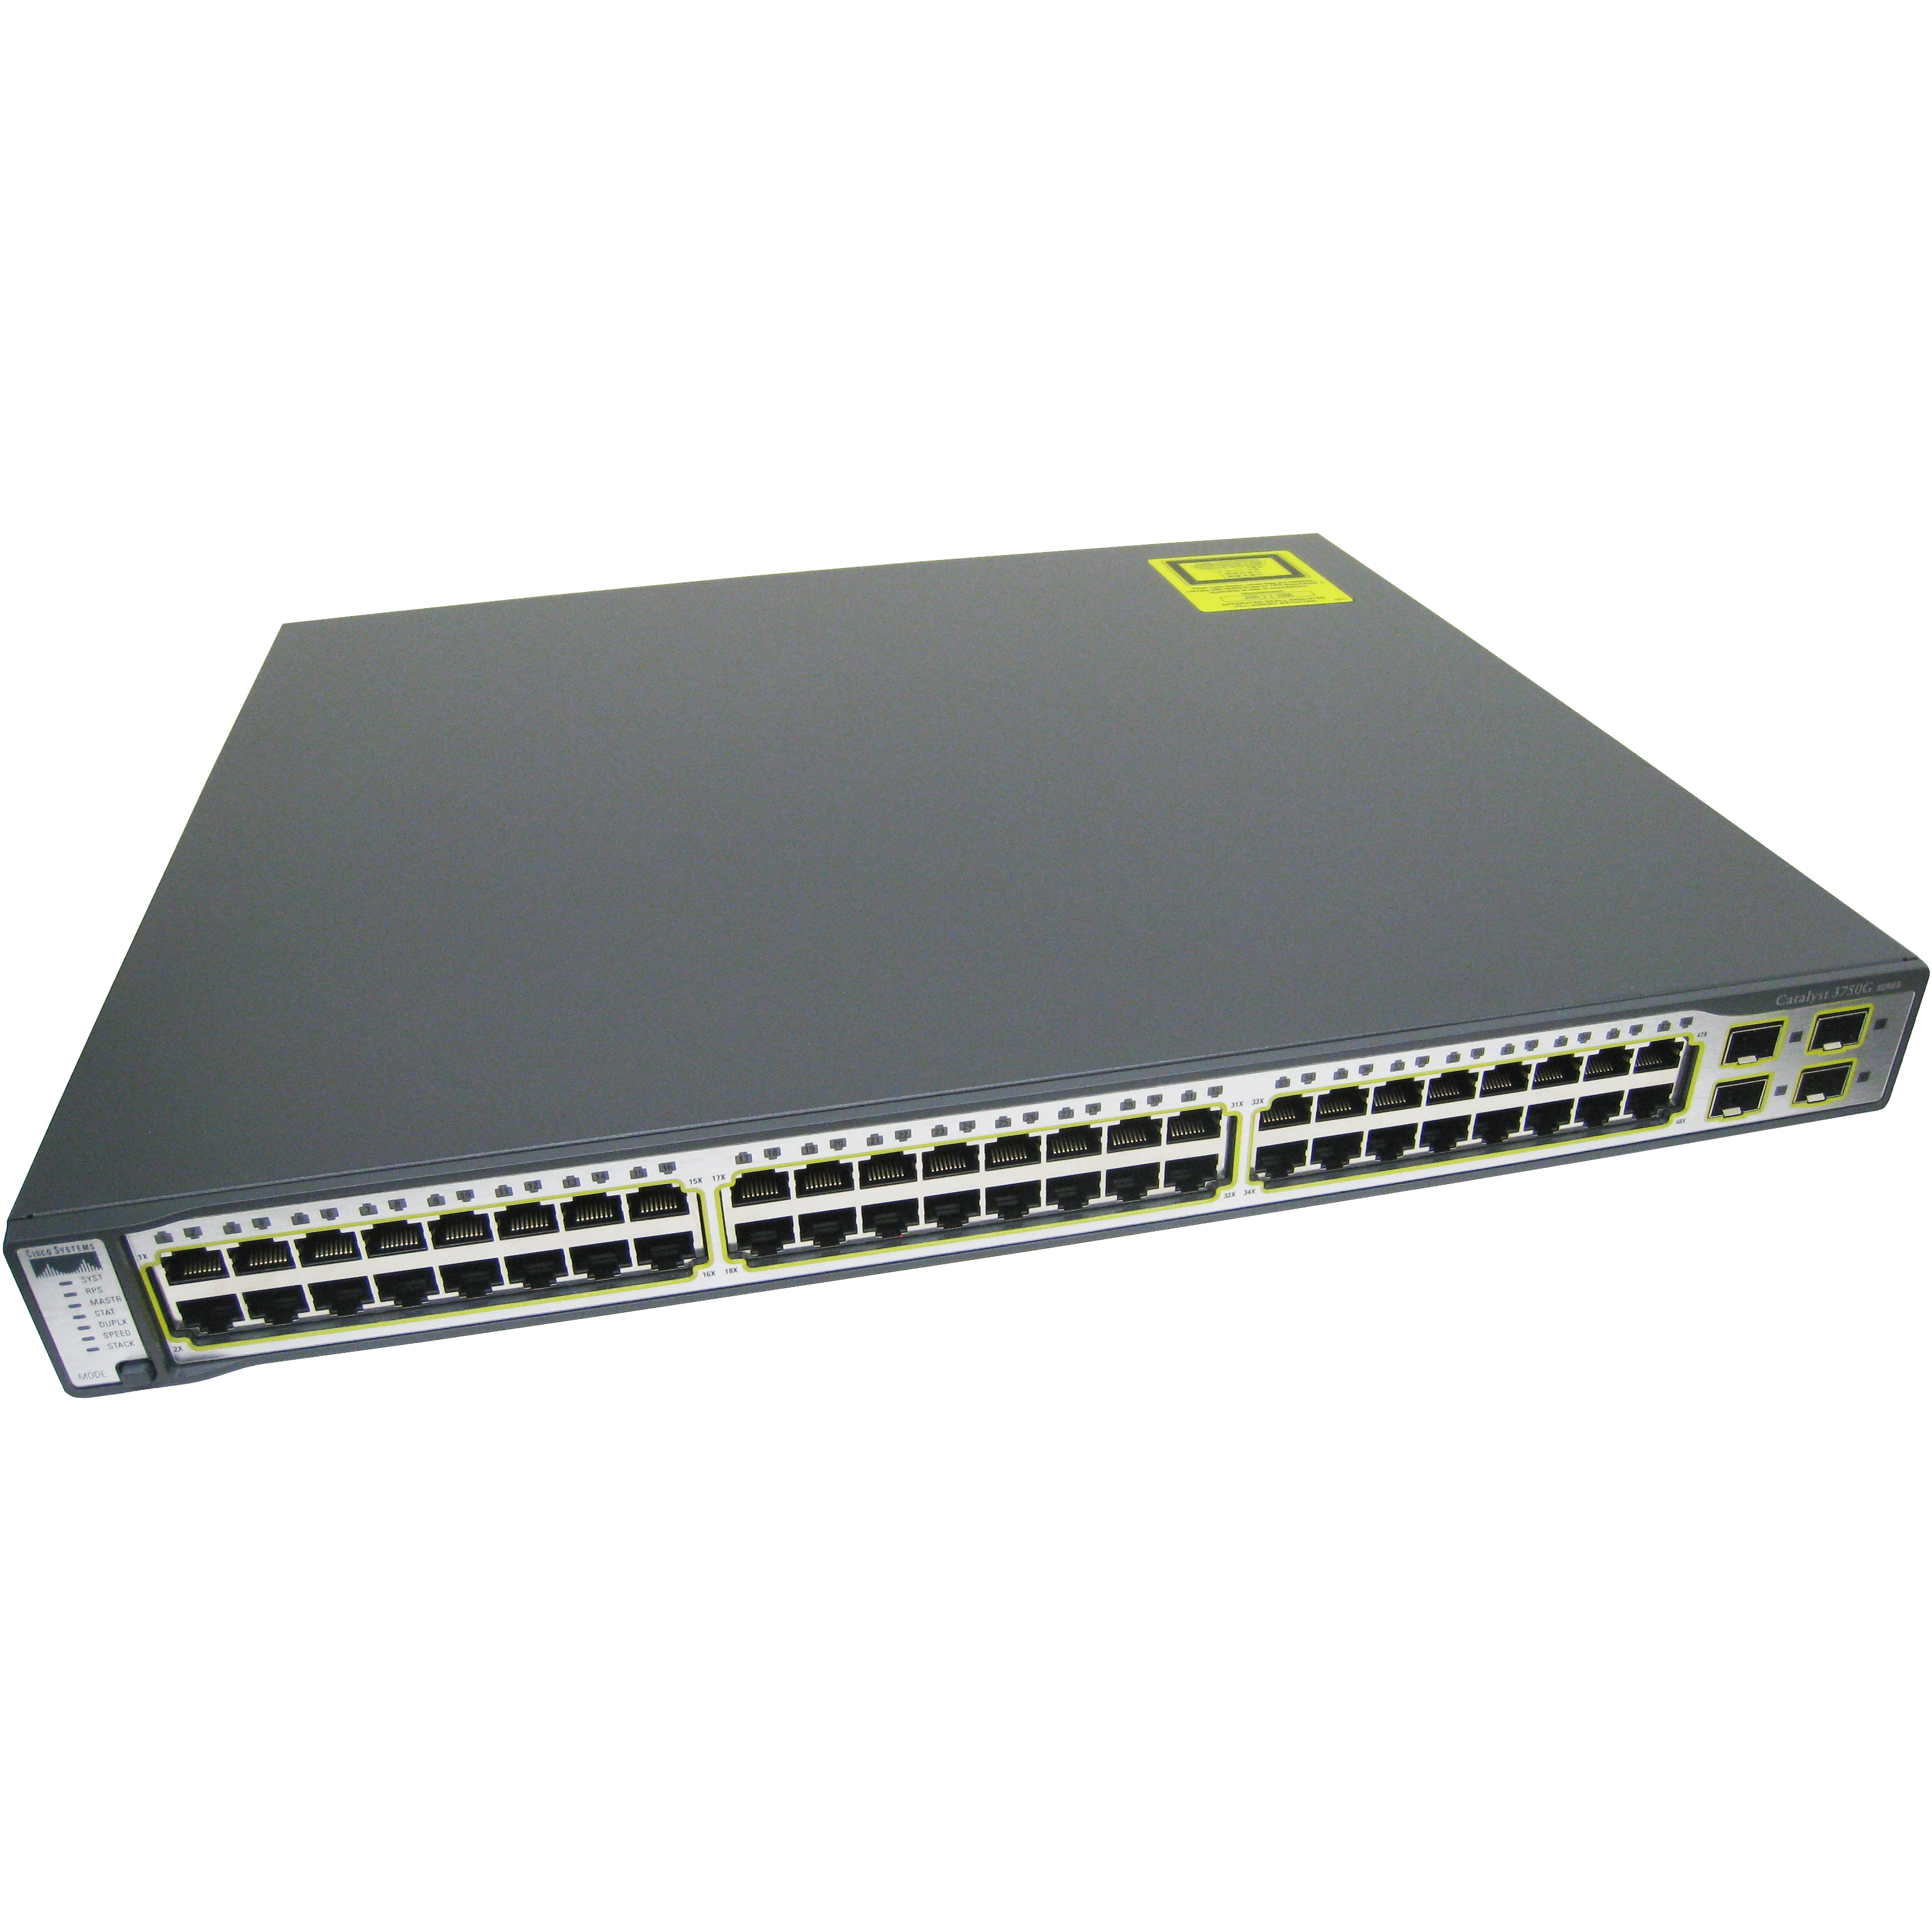 Cisco WS-C3750-48PS-E